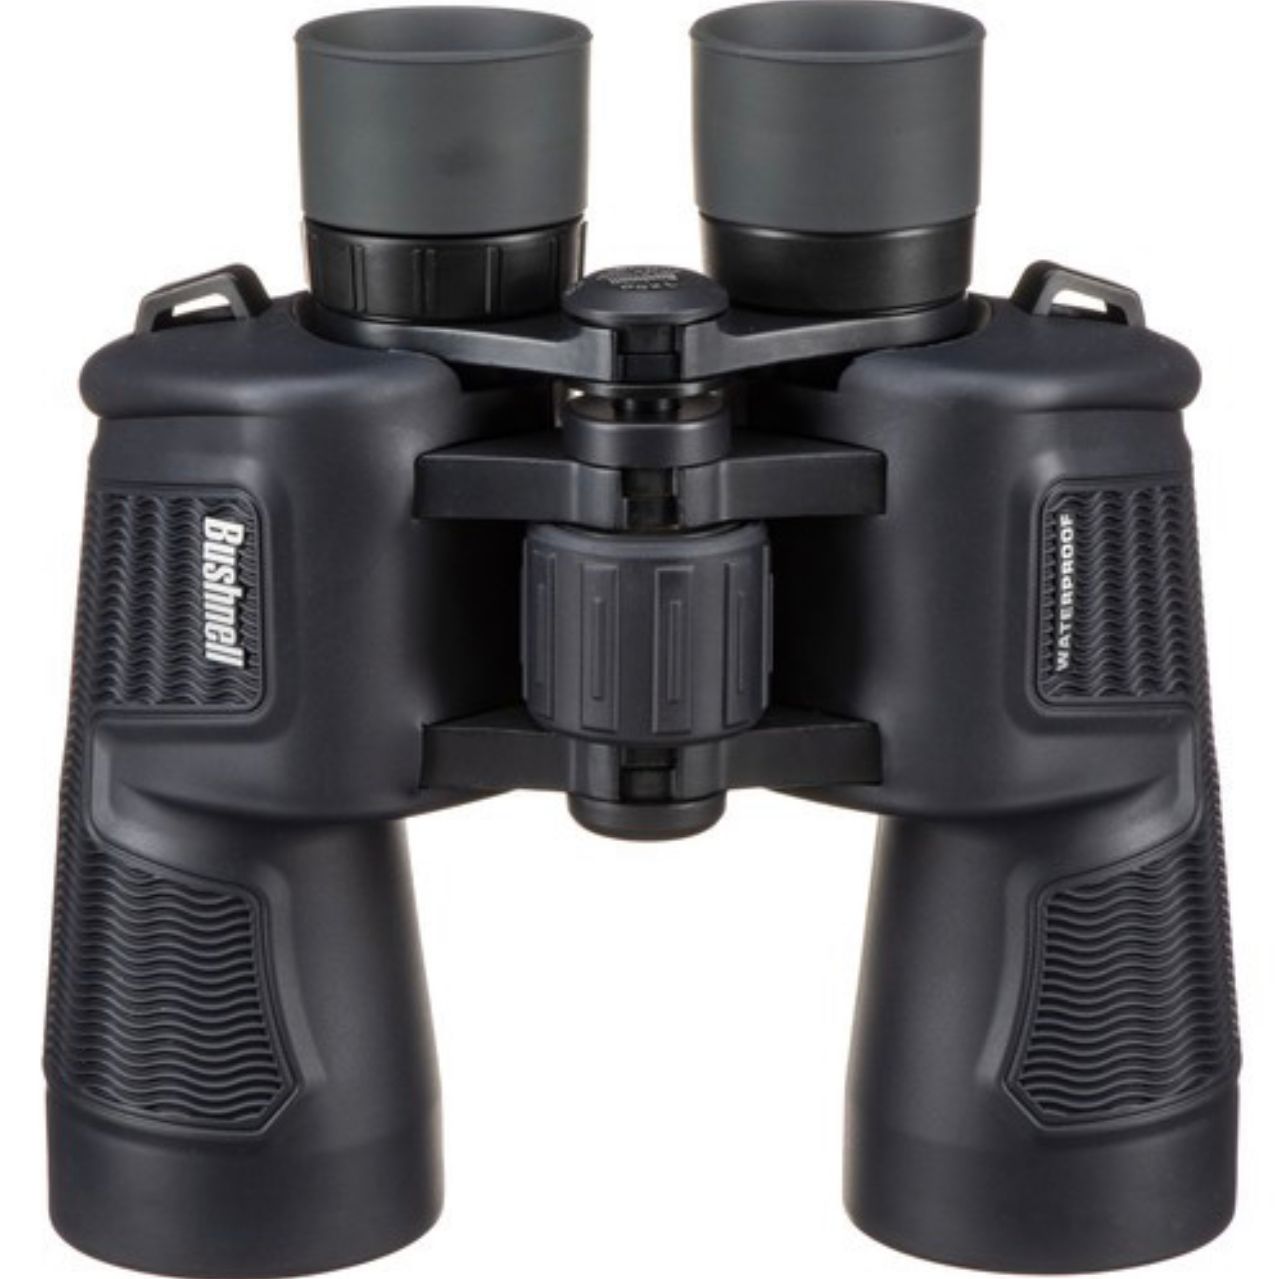 Bushnell Waterproof Binoculars H20  7x50 (157050) - Limited Lifetime Warranty